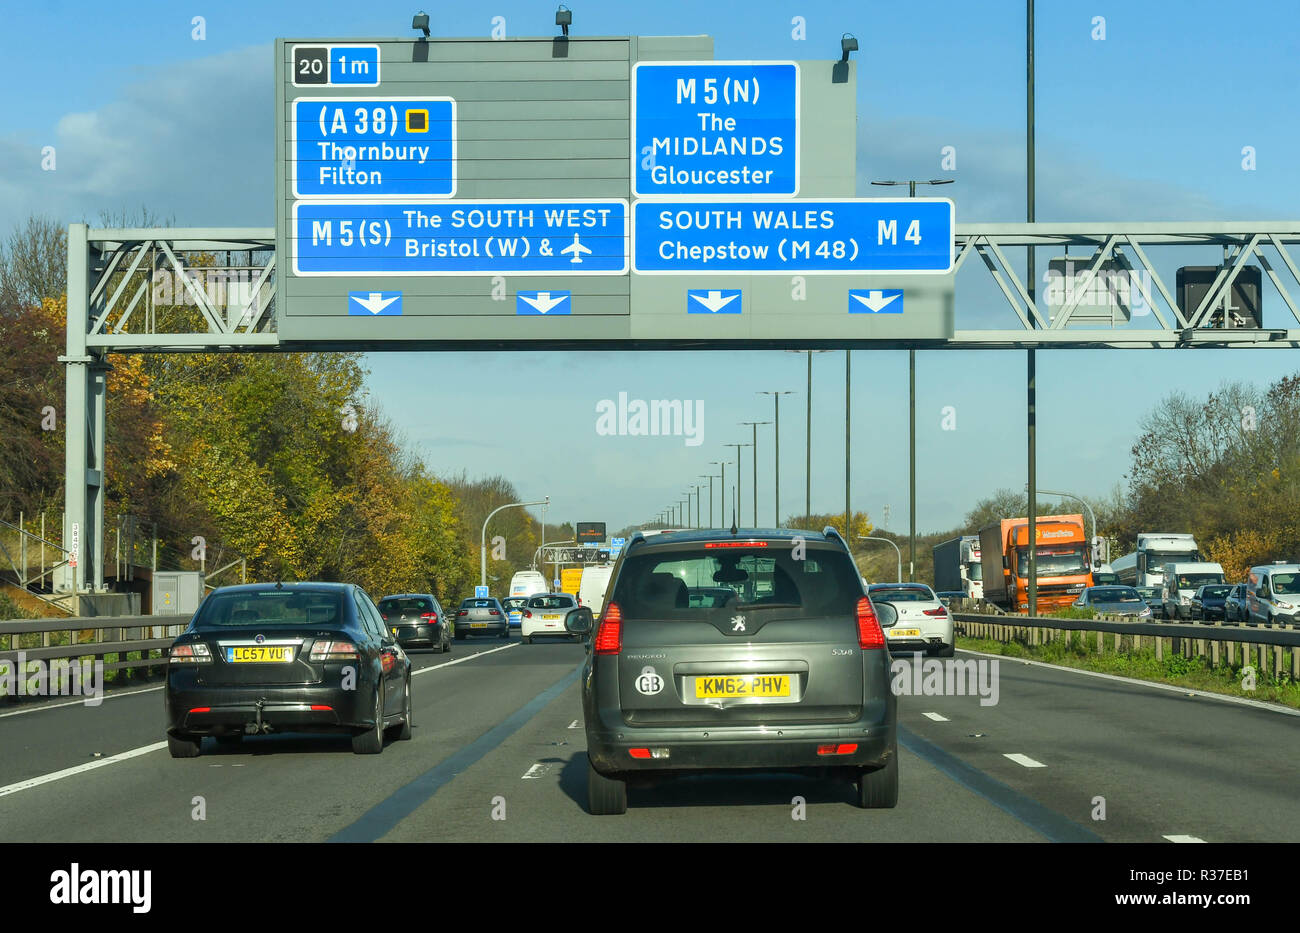 BRISTOL, England - NOVEMBER 2018: Verkehr, der unter einem Portal auf der Autobahn M4 in der Nähe von Bristol. Das Zeichen zeigt Wege der Annäherung an einen großen Kreuzung Stockfoto